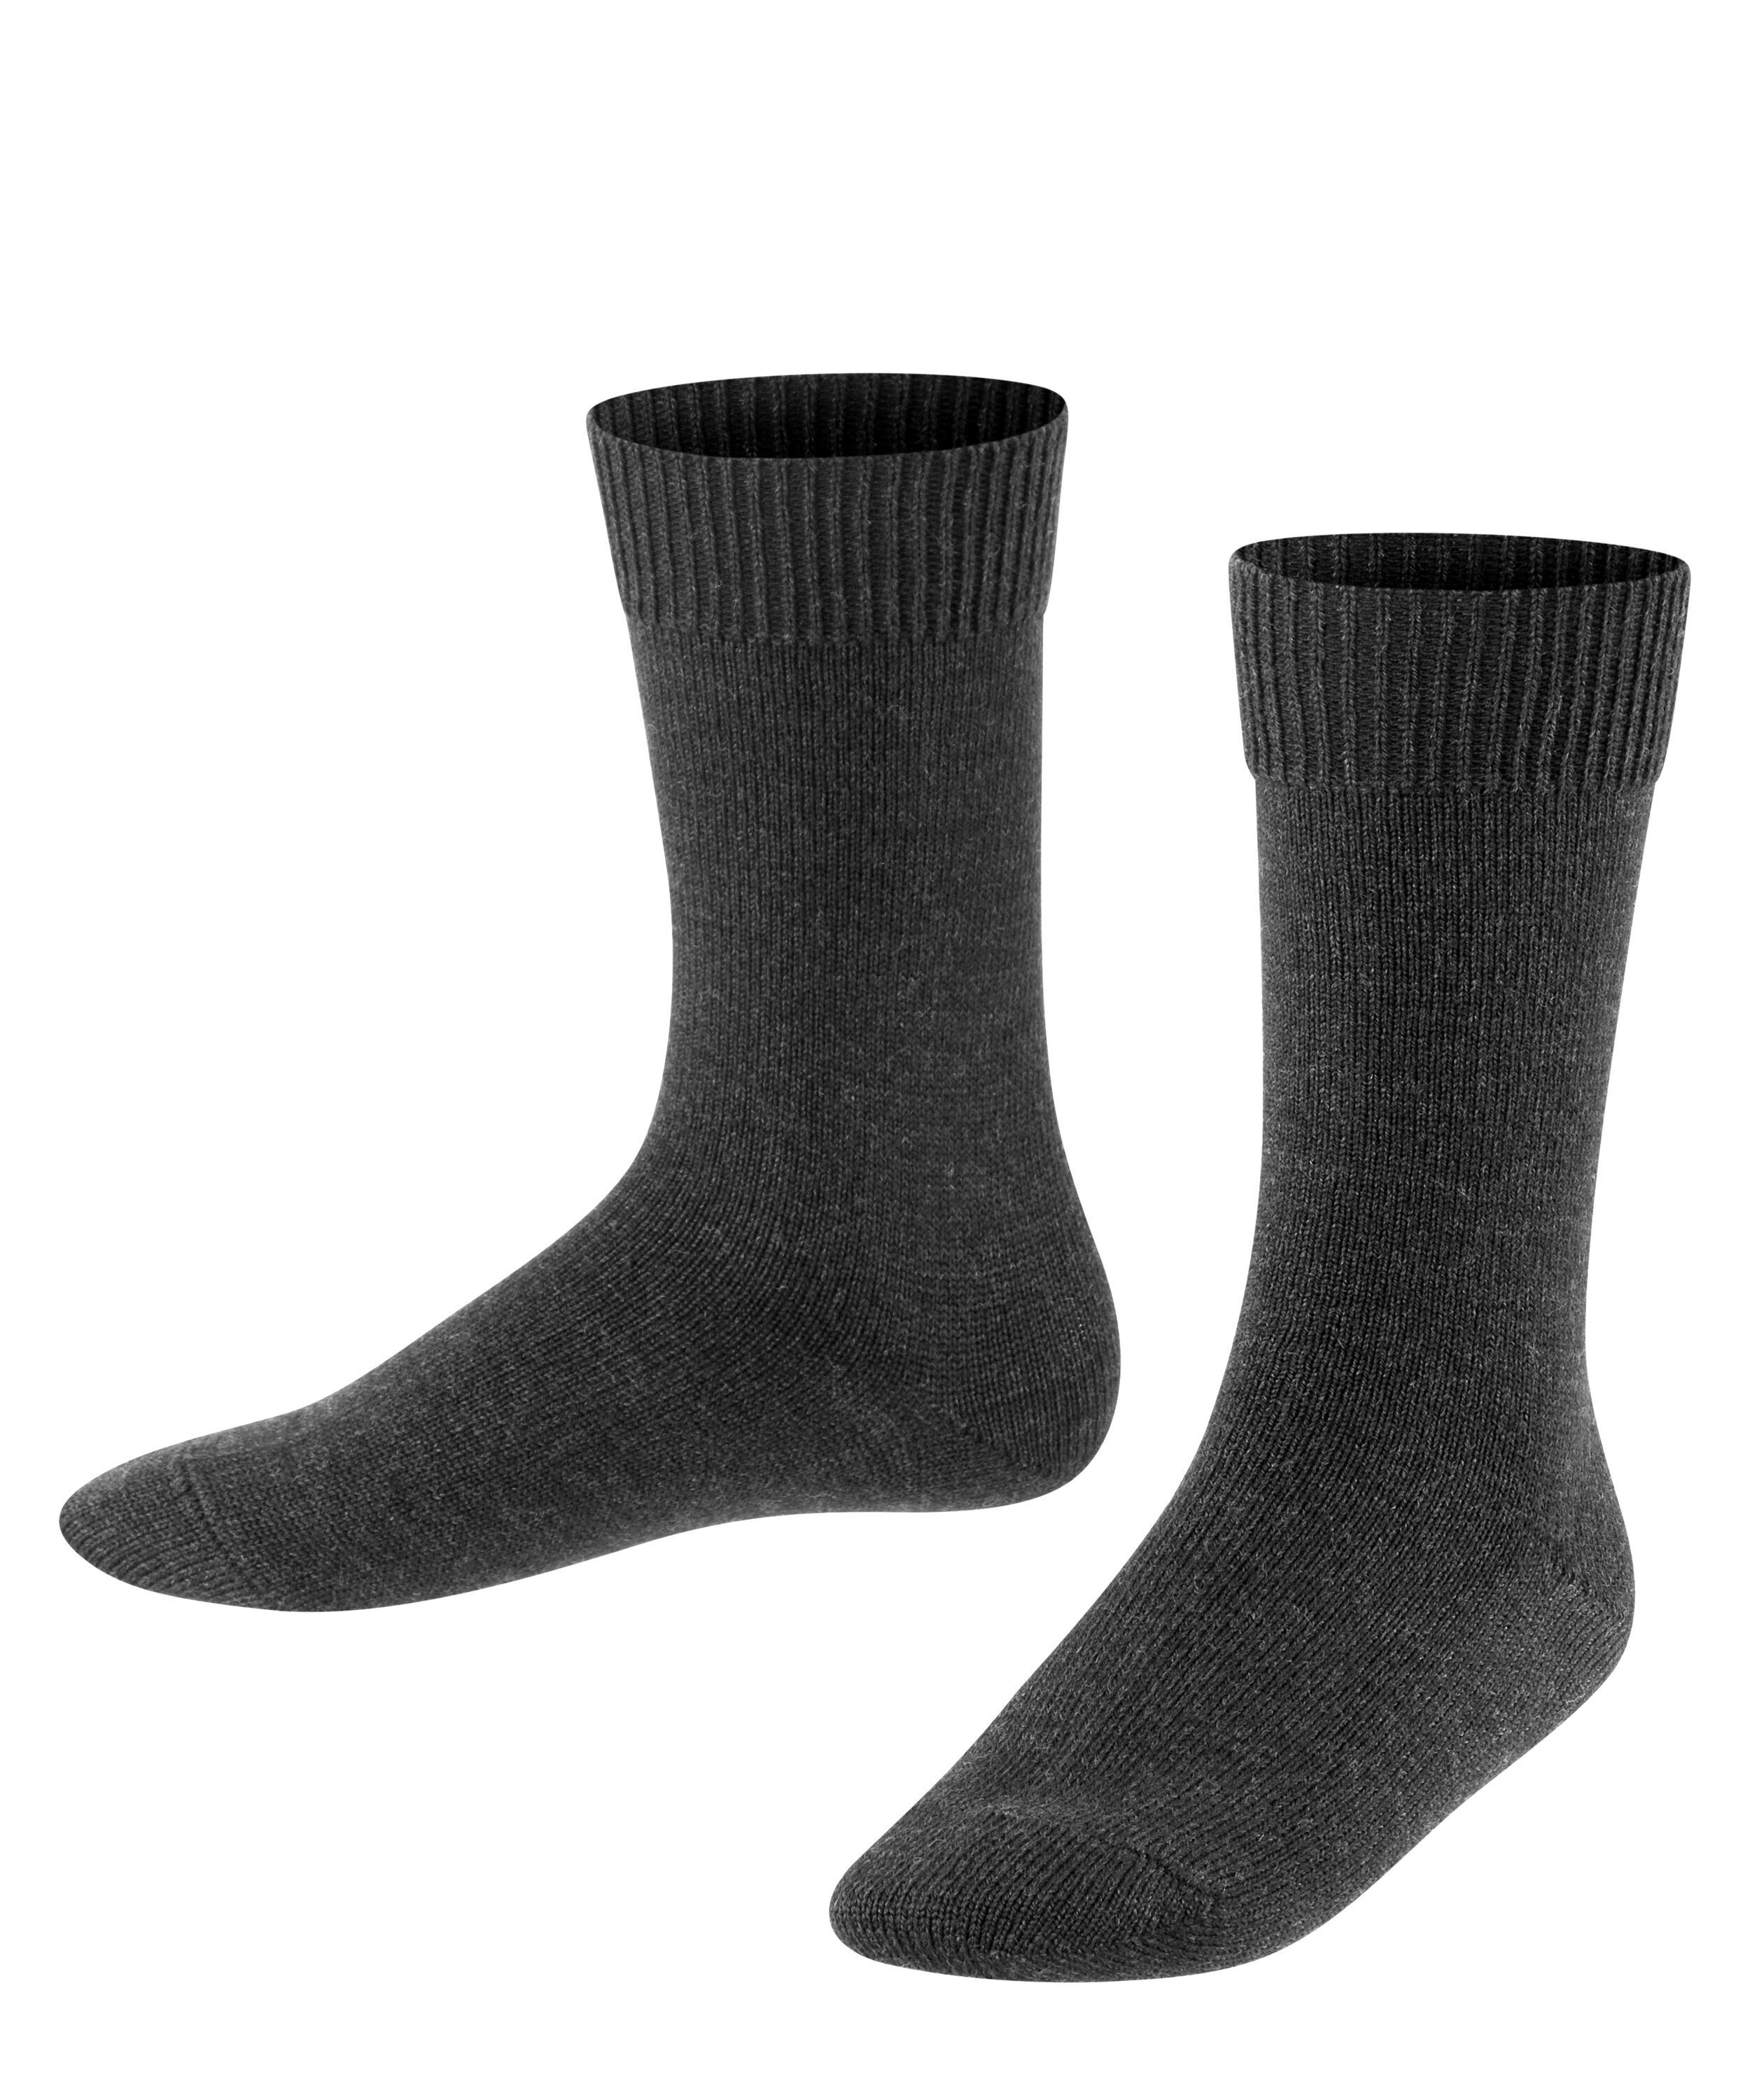 Socken anthra.mel Wool (3080) (1-Paar) FALKE Comfort